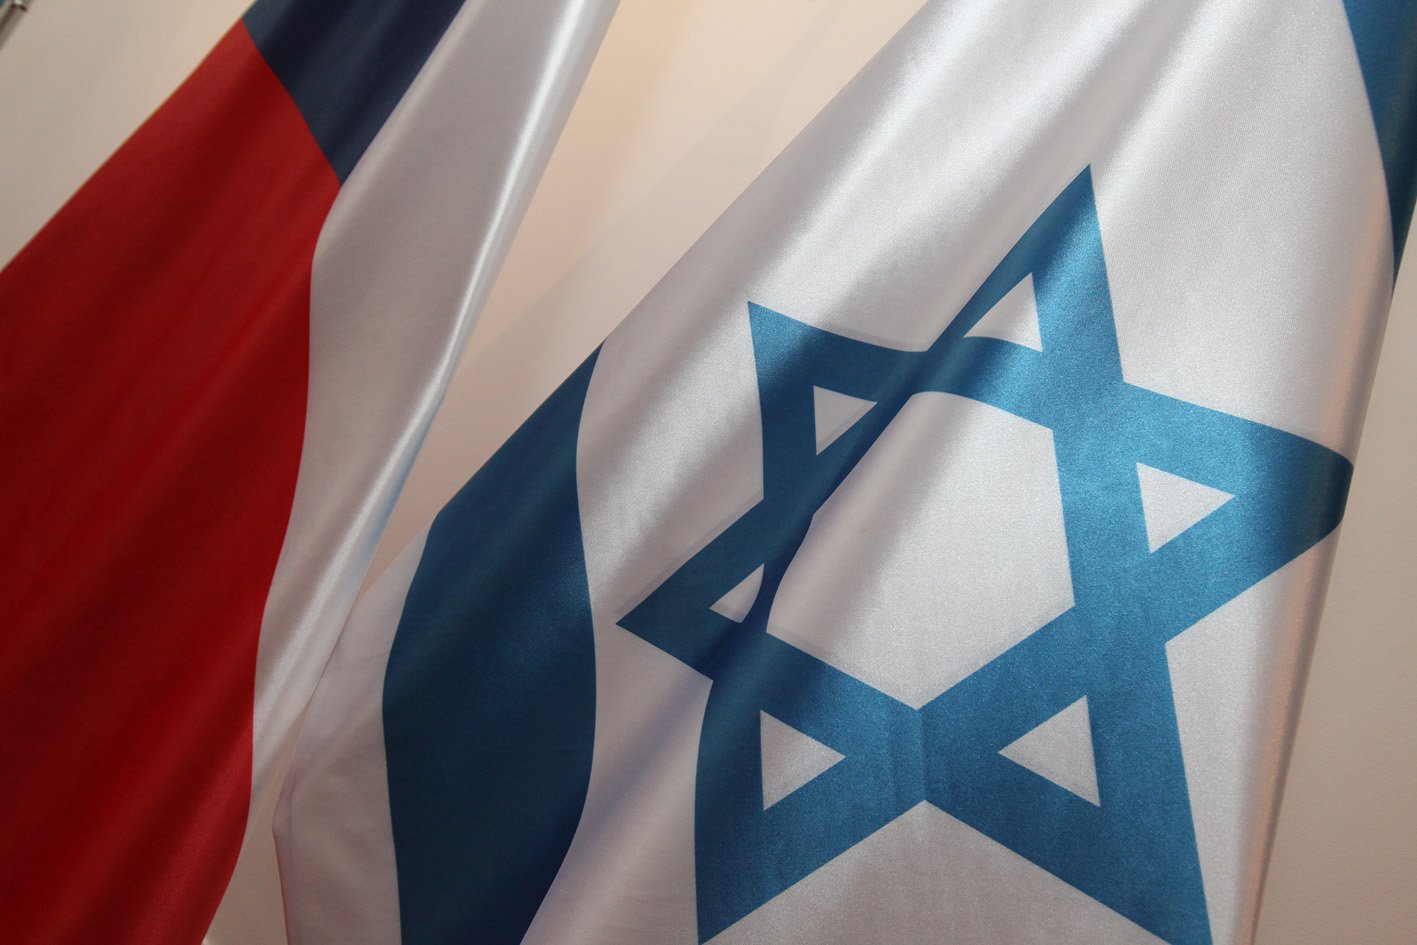 Izrael je přítel, který má naši důvěru